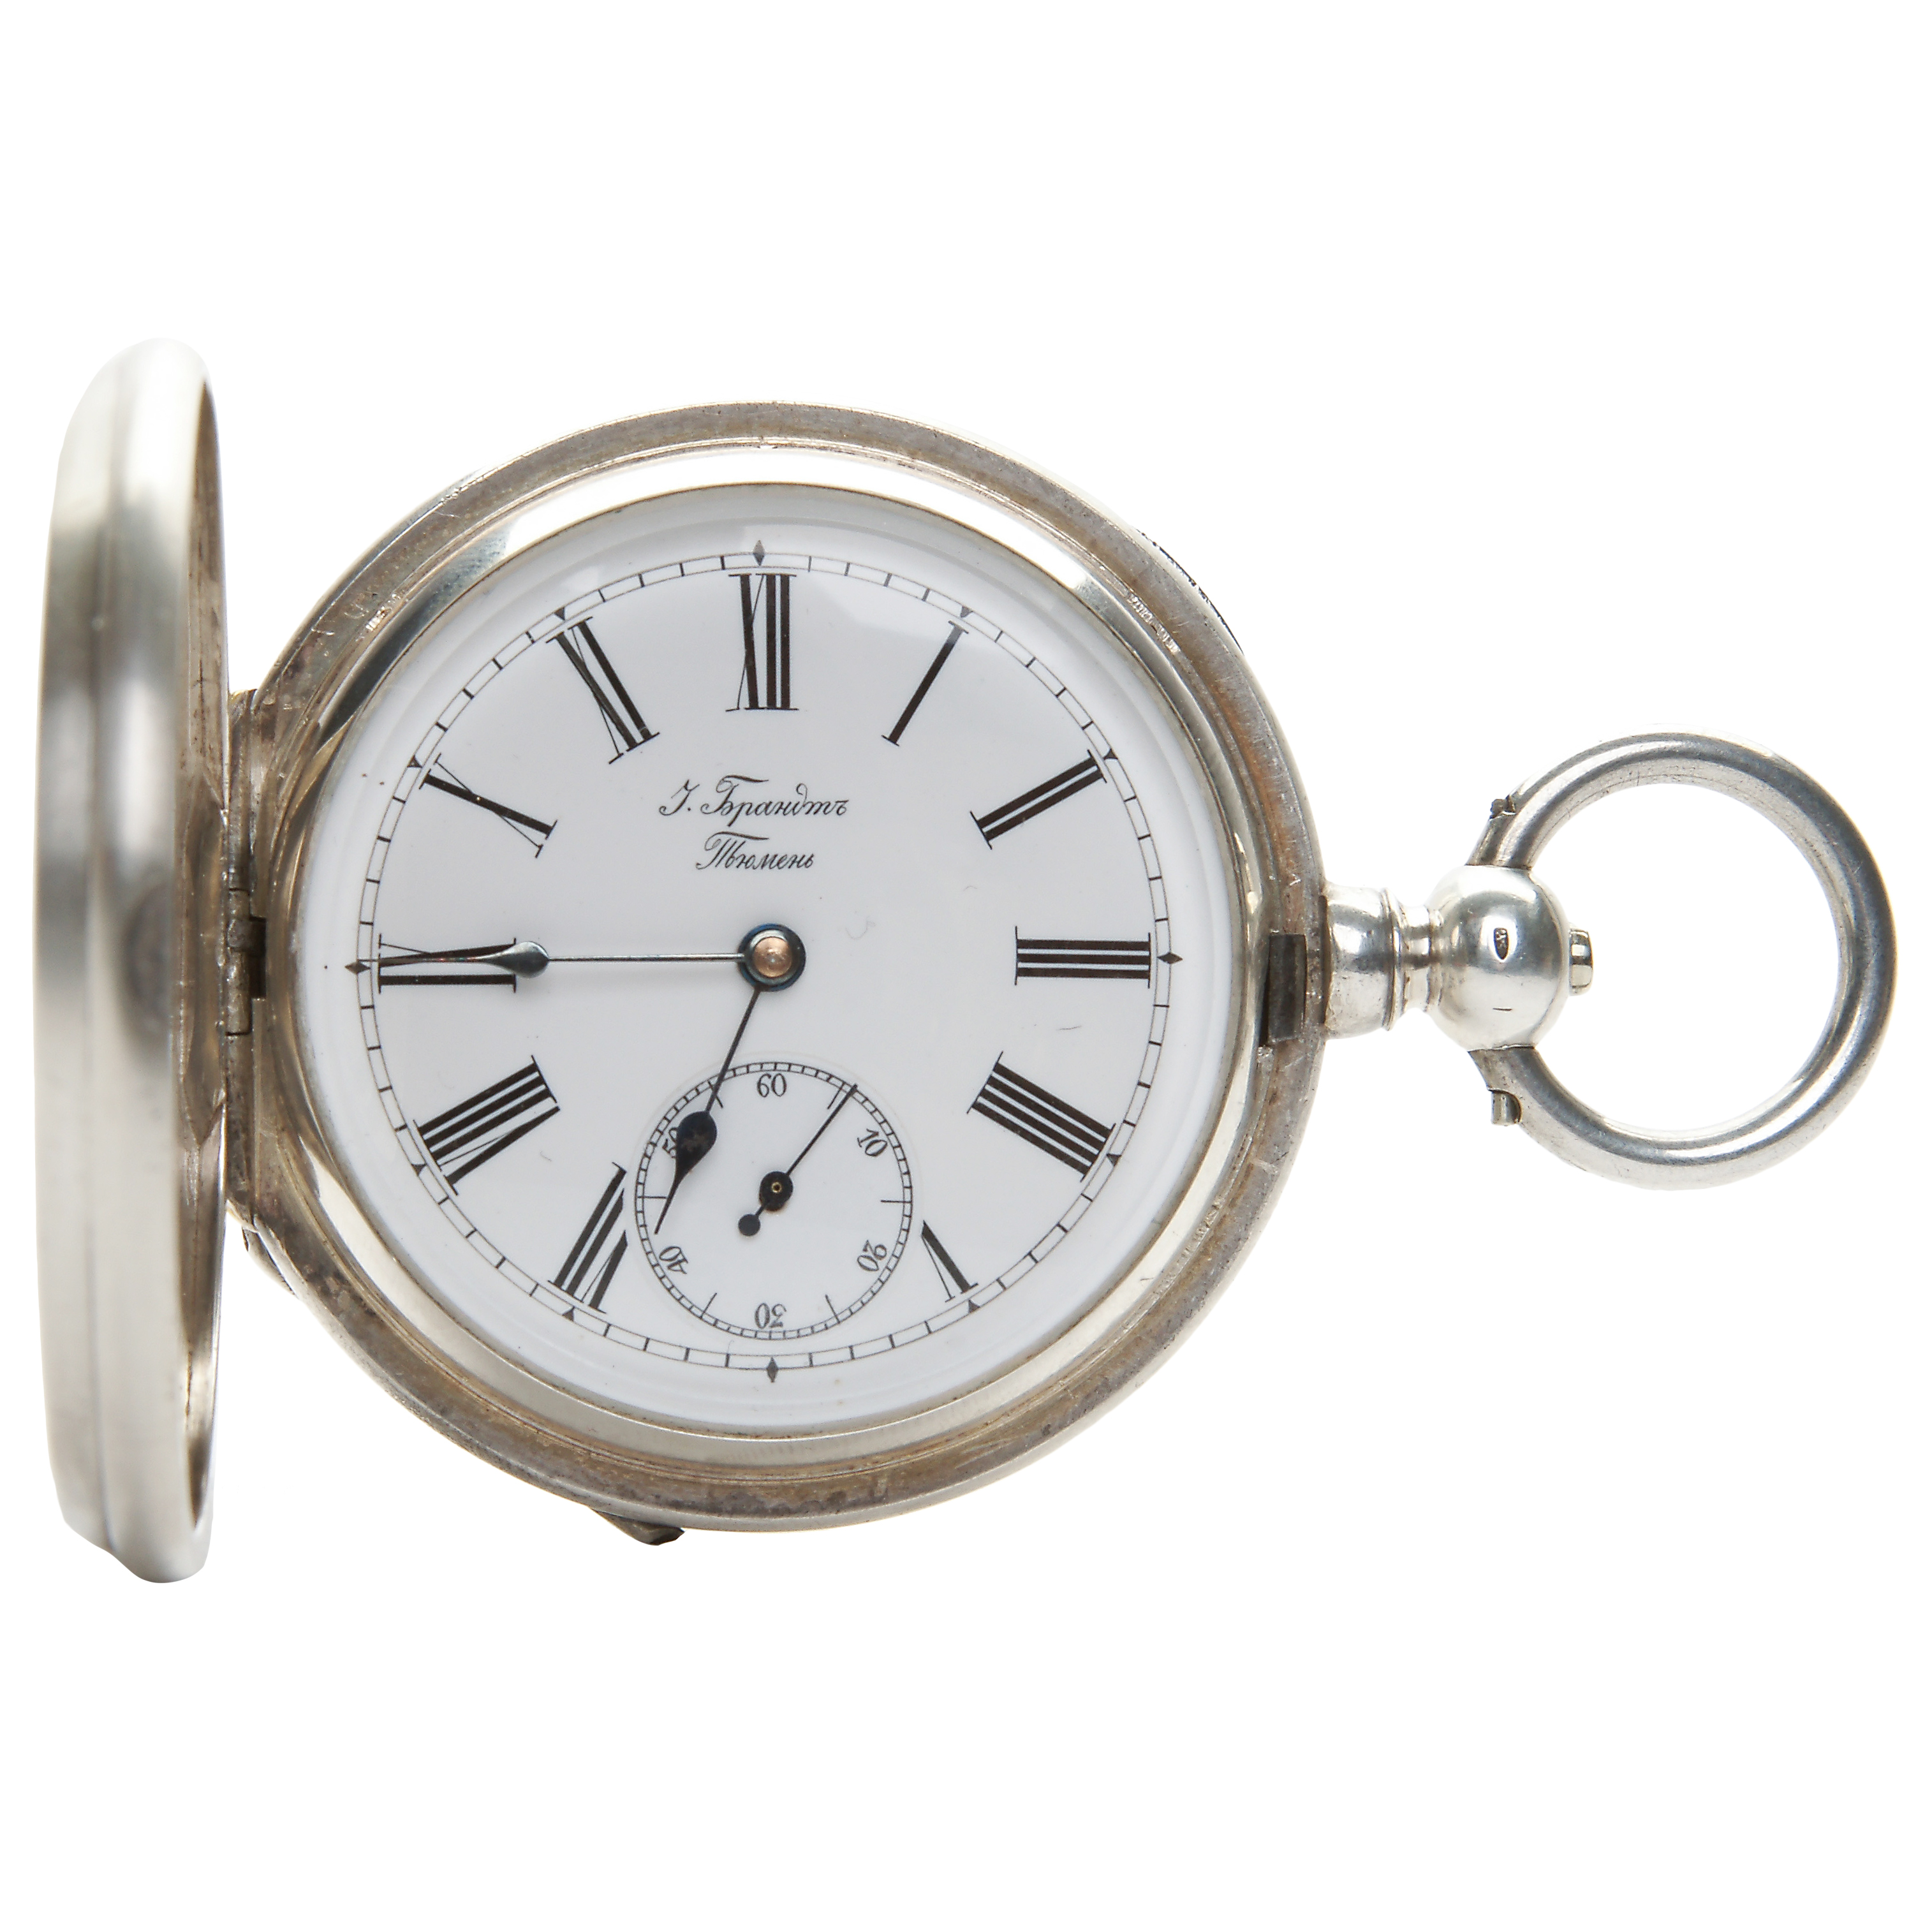 Серебряные карманные часы. Чайка часы карманные серебряные. Карманные серебрянные часы фирмы Roskopf.